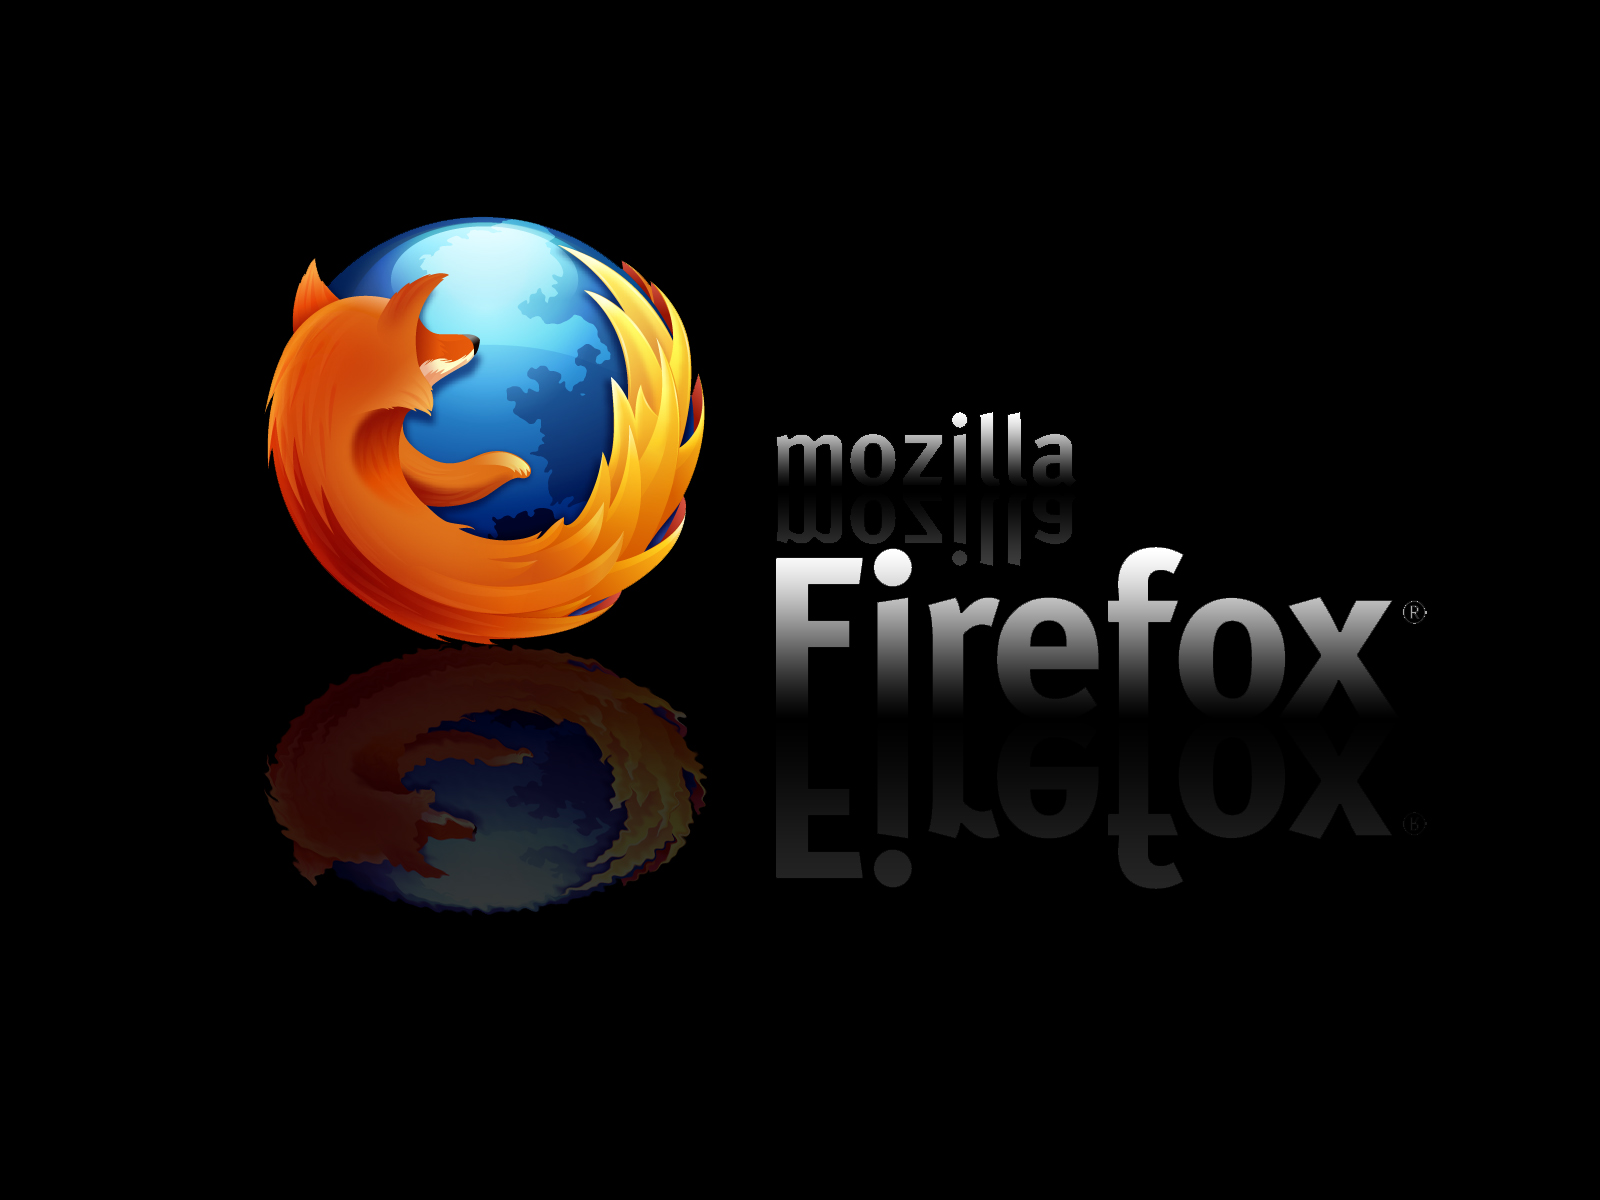 show mozilla firefox start page